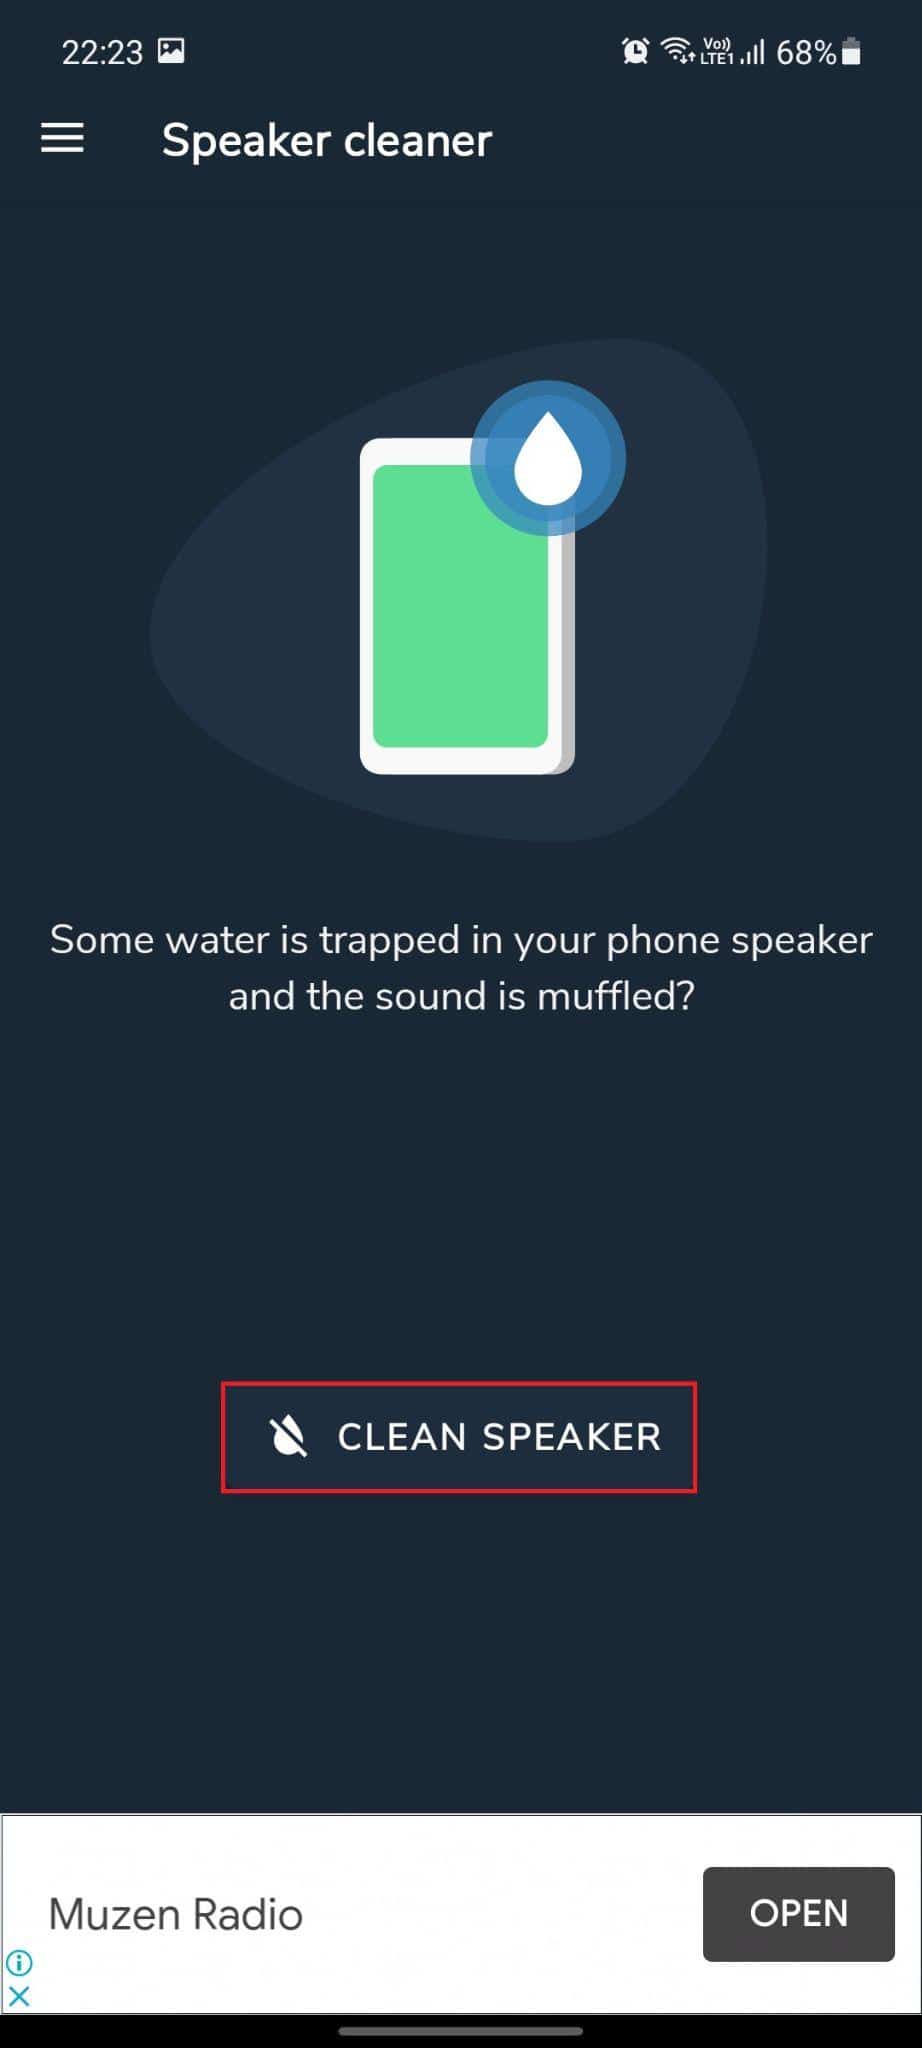 扬声器清洁器 - 去除水并修复声音应用程序。 清洁扬声器选项突出显示。 如何修复手机扬声器进水损坏